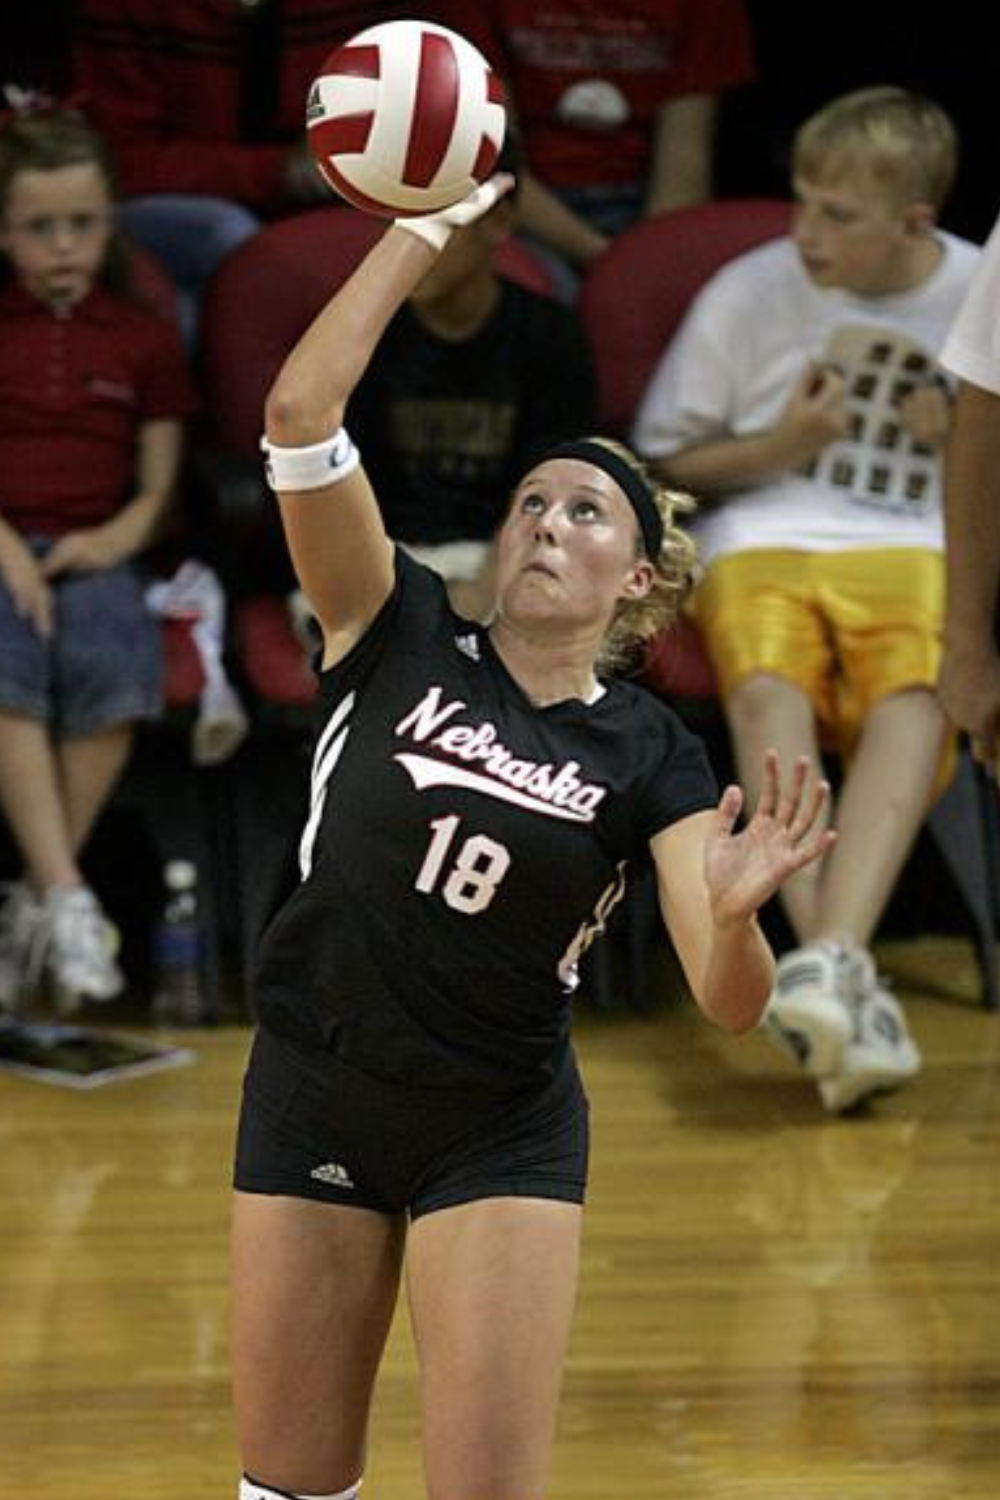 Former Volleyball Player Dani Busboom Kelly